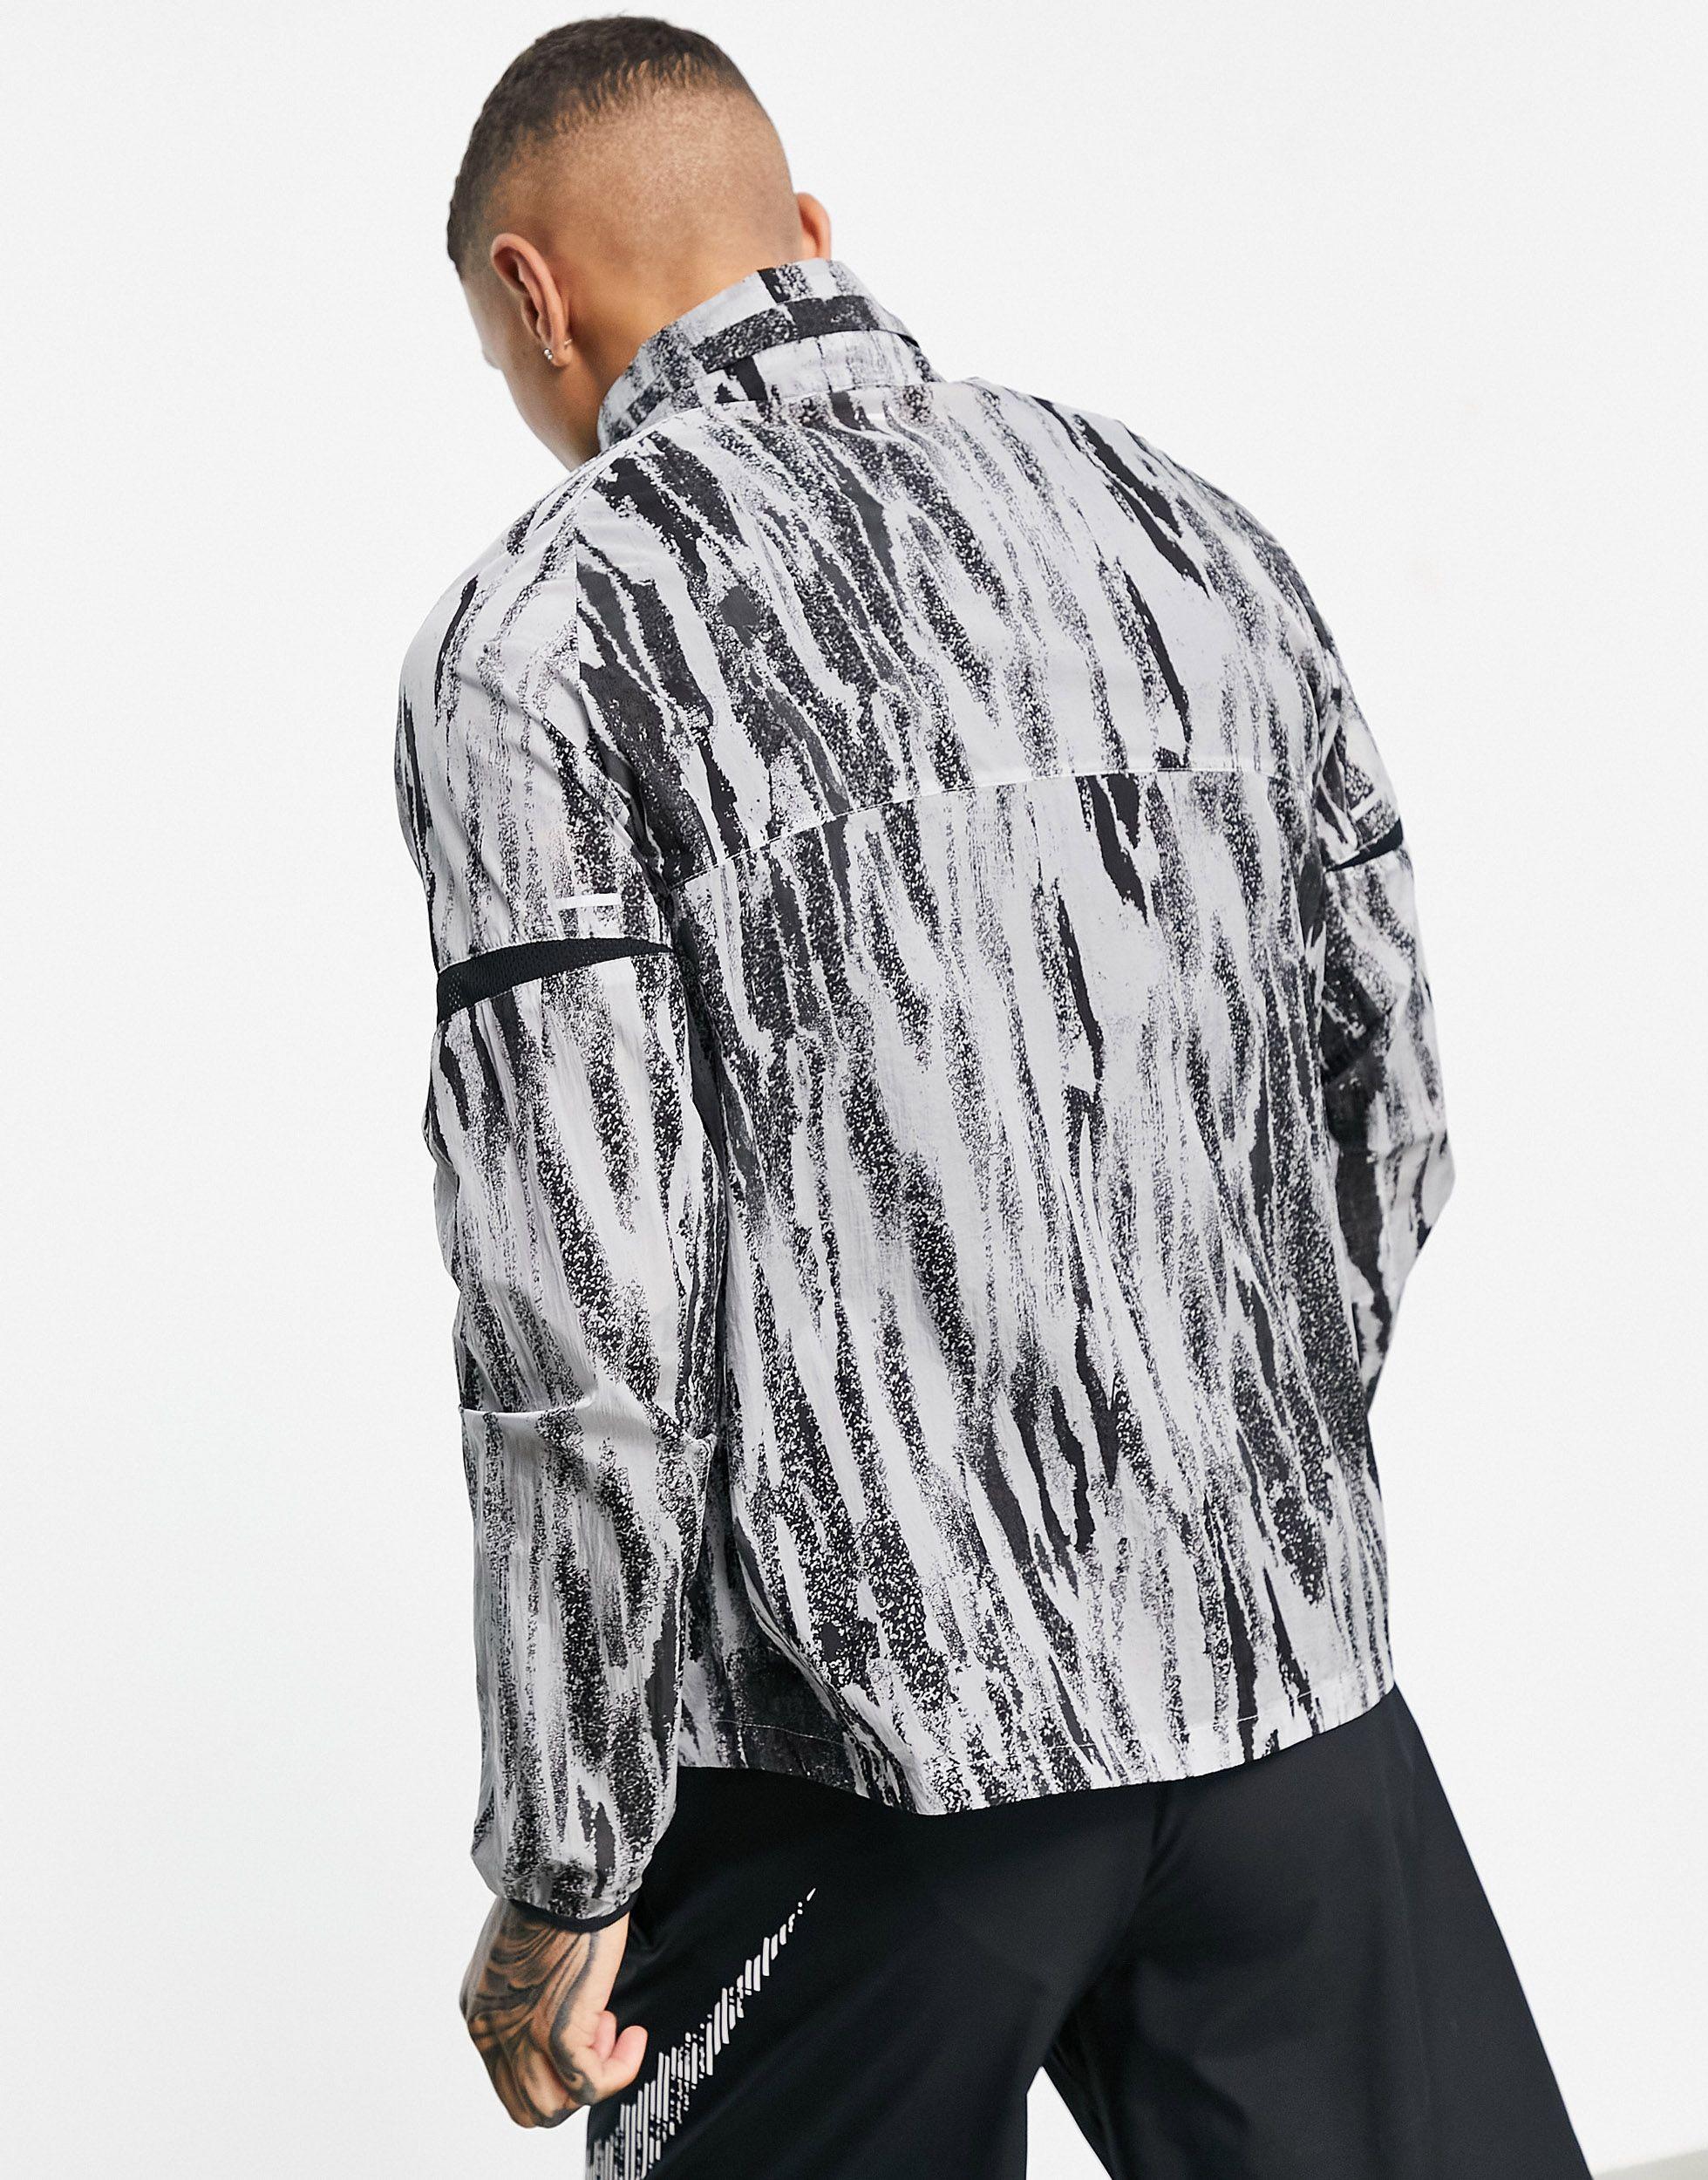 Nike Wild Run Printed Windrunner Jacket in Gray for Men - Lyst